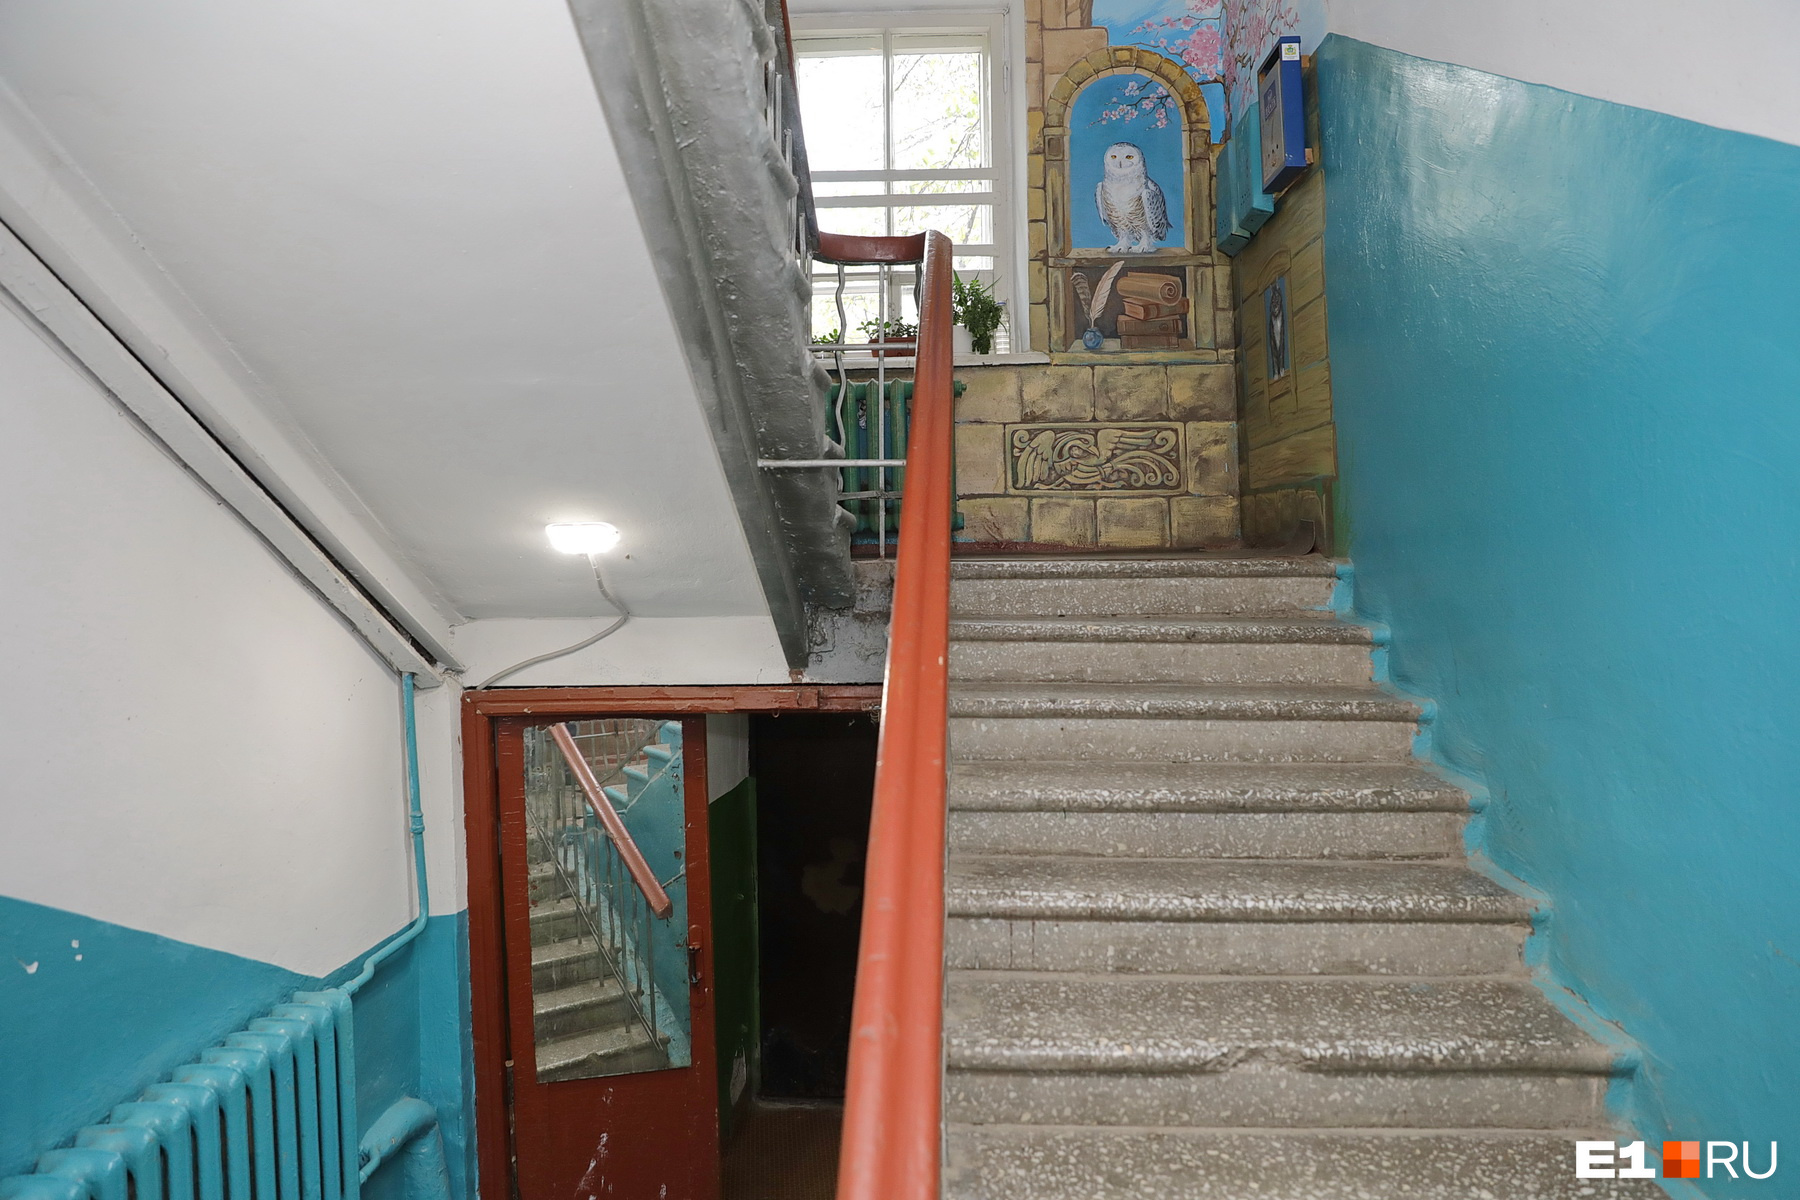 Разрисованный подъезд и лифт - Александровская 79, к.2 - Всеволожский форум